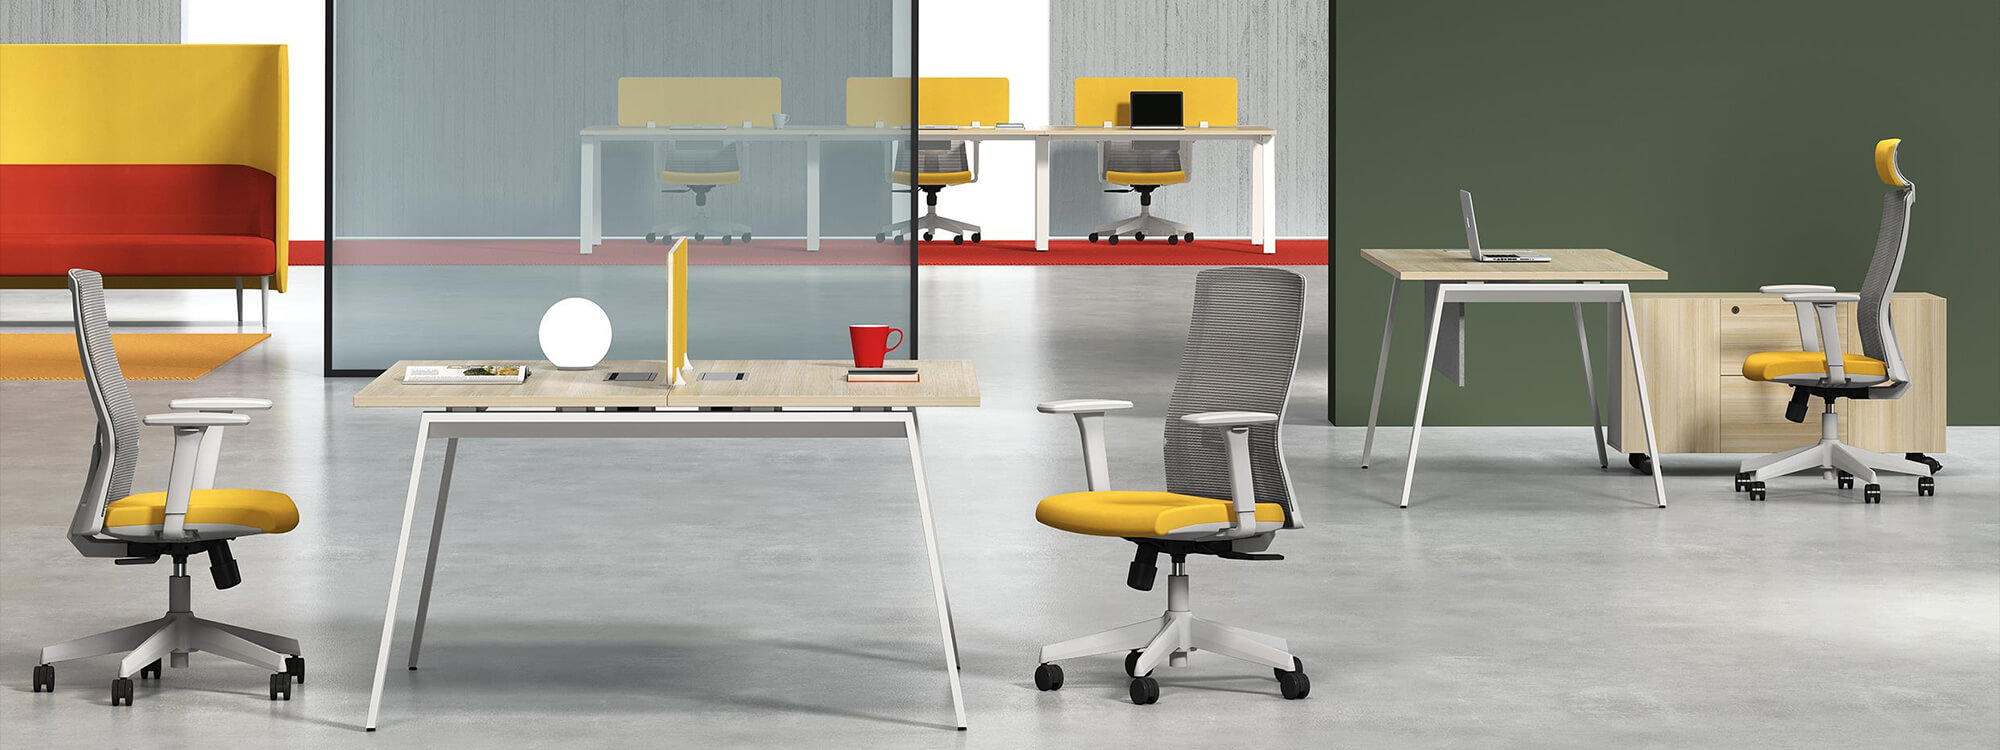 En la oficina hay una estación de trabajo de dos plazas junto a una silla de oficina con un cojín amarillo.